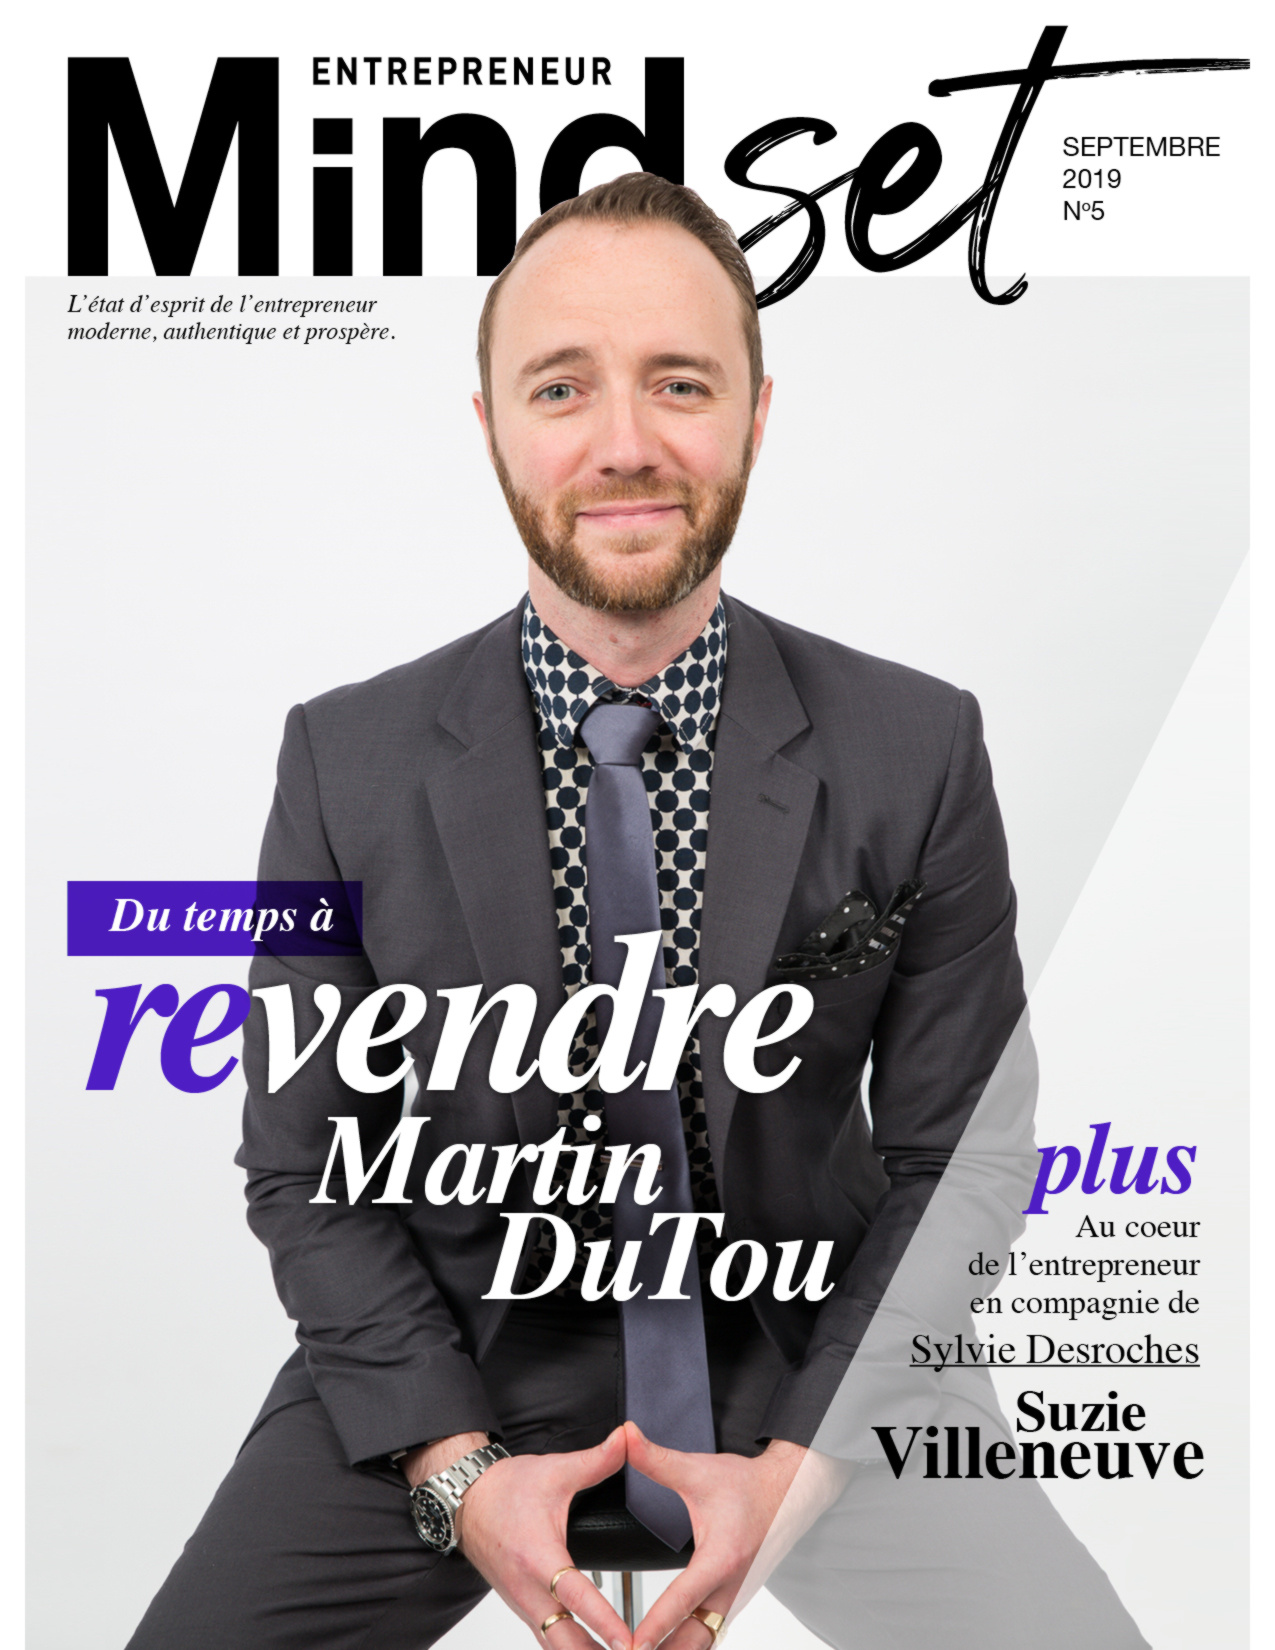 Martin DuTou Mindset entrepreneur magazine